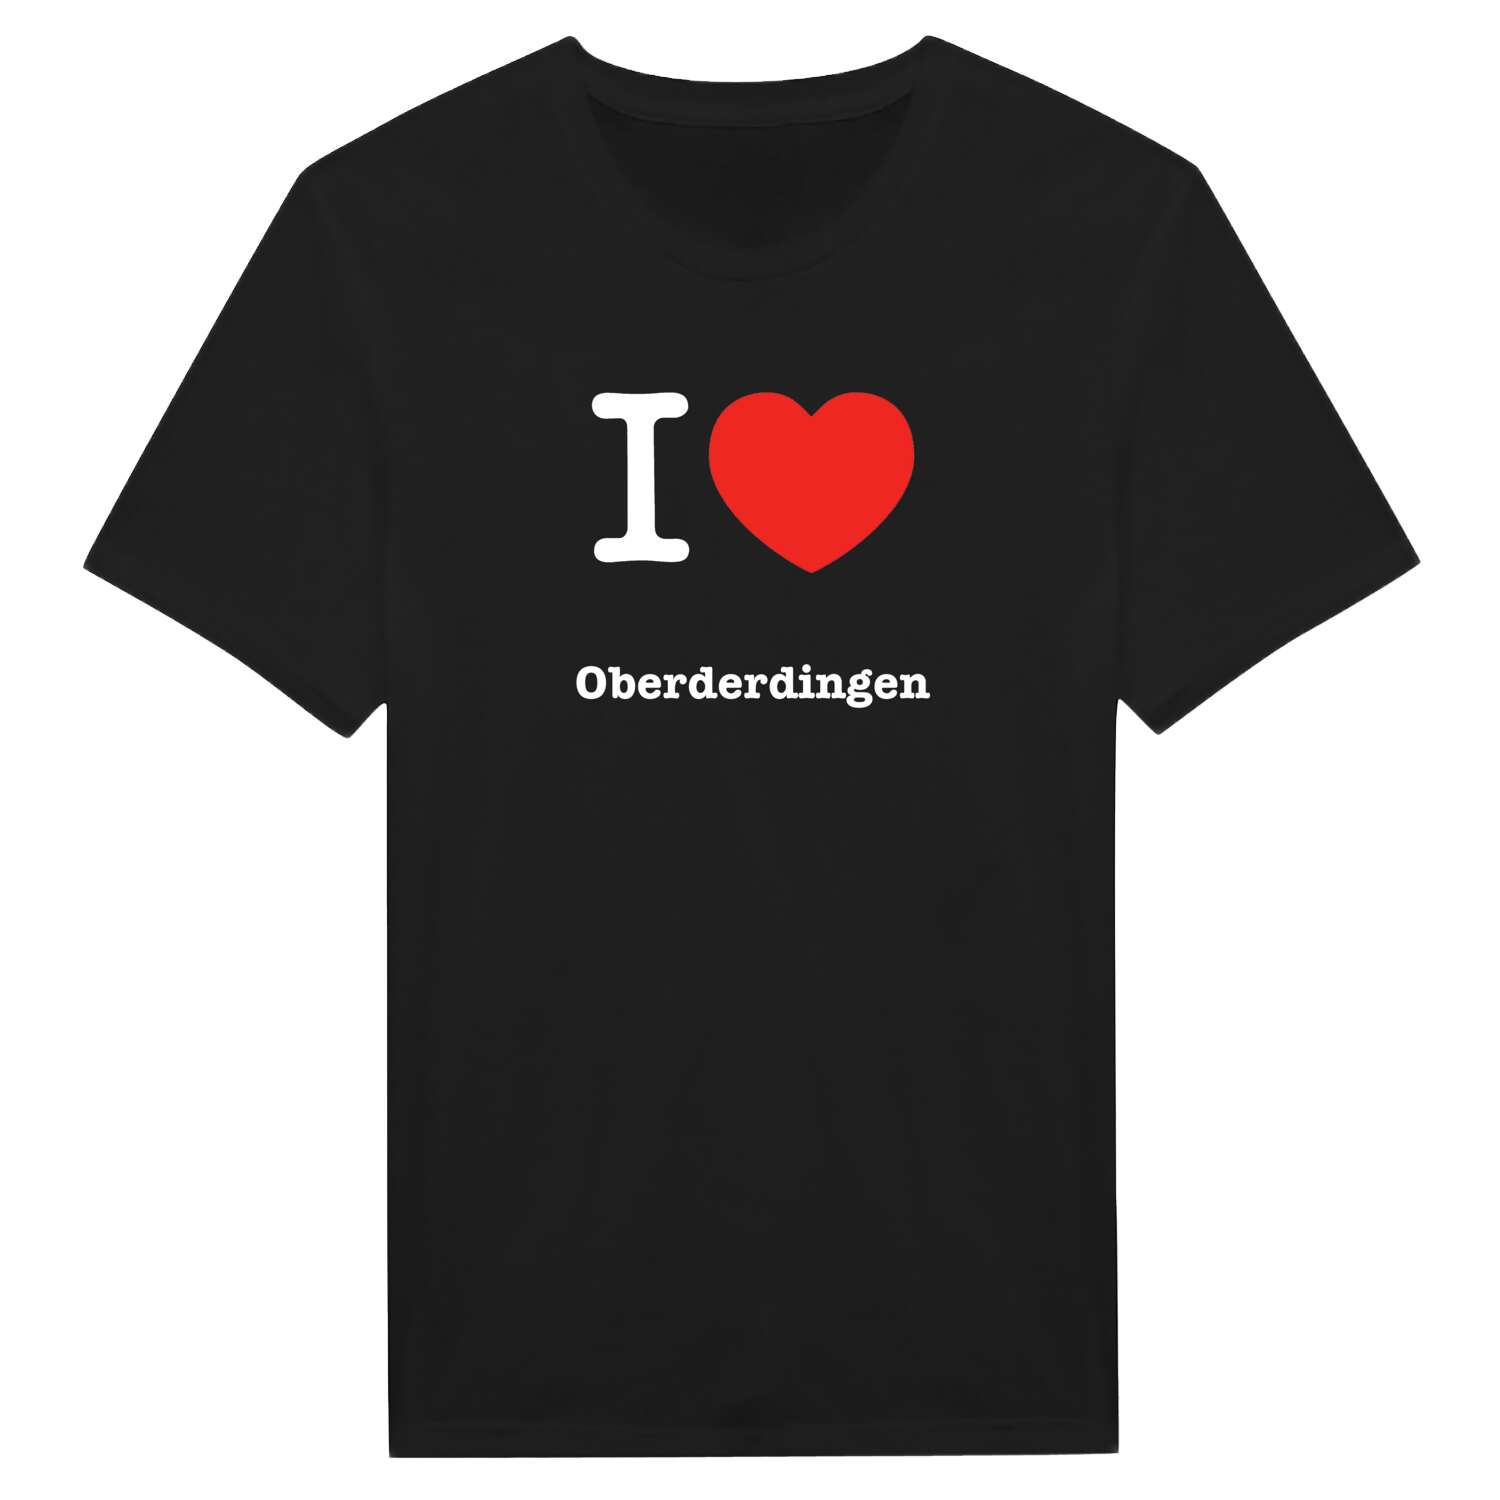 Oberderdingen T-Shirt »I love«